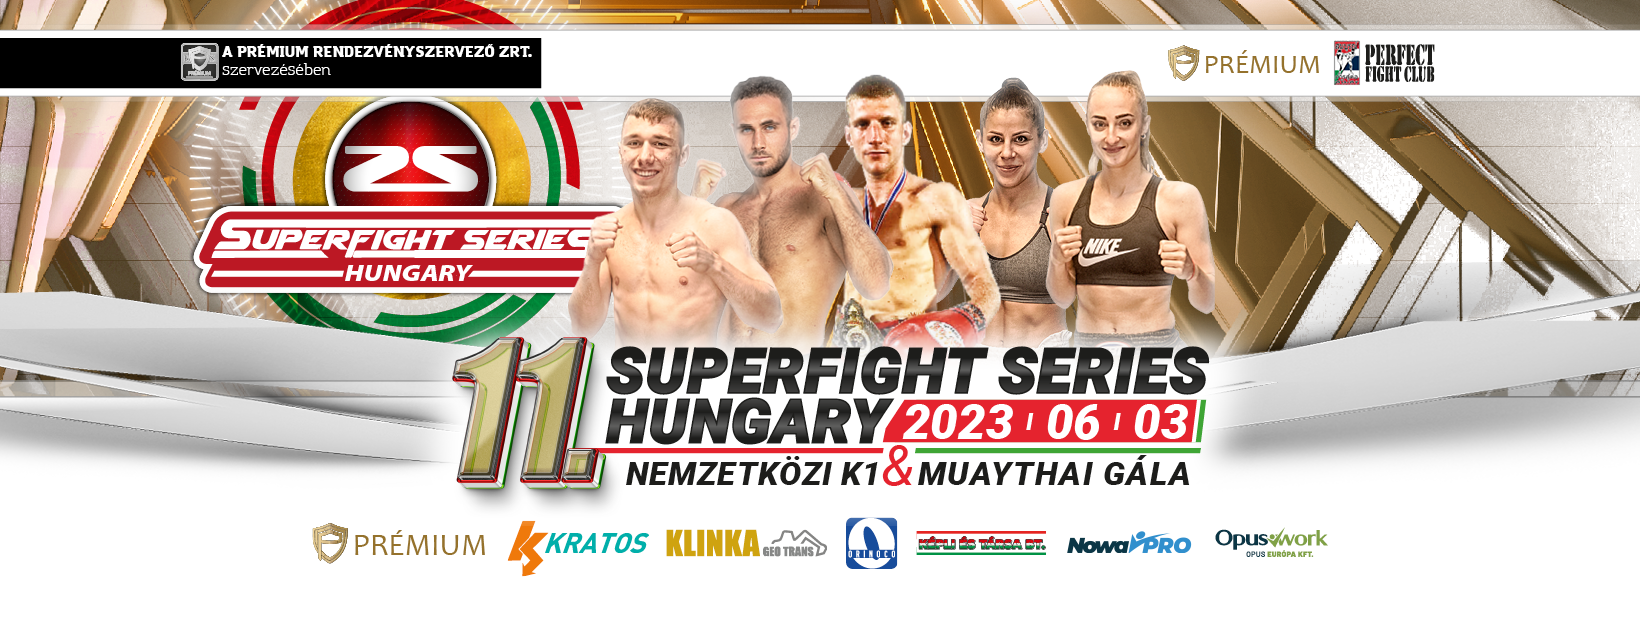 Superfight Series Hungary – Nemzetközi K1 & Muay Thai Gála - Galéria - 1. kép